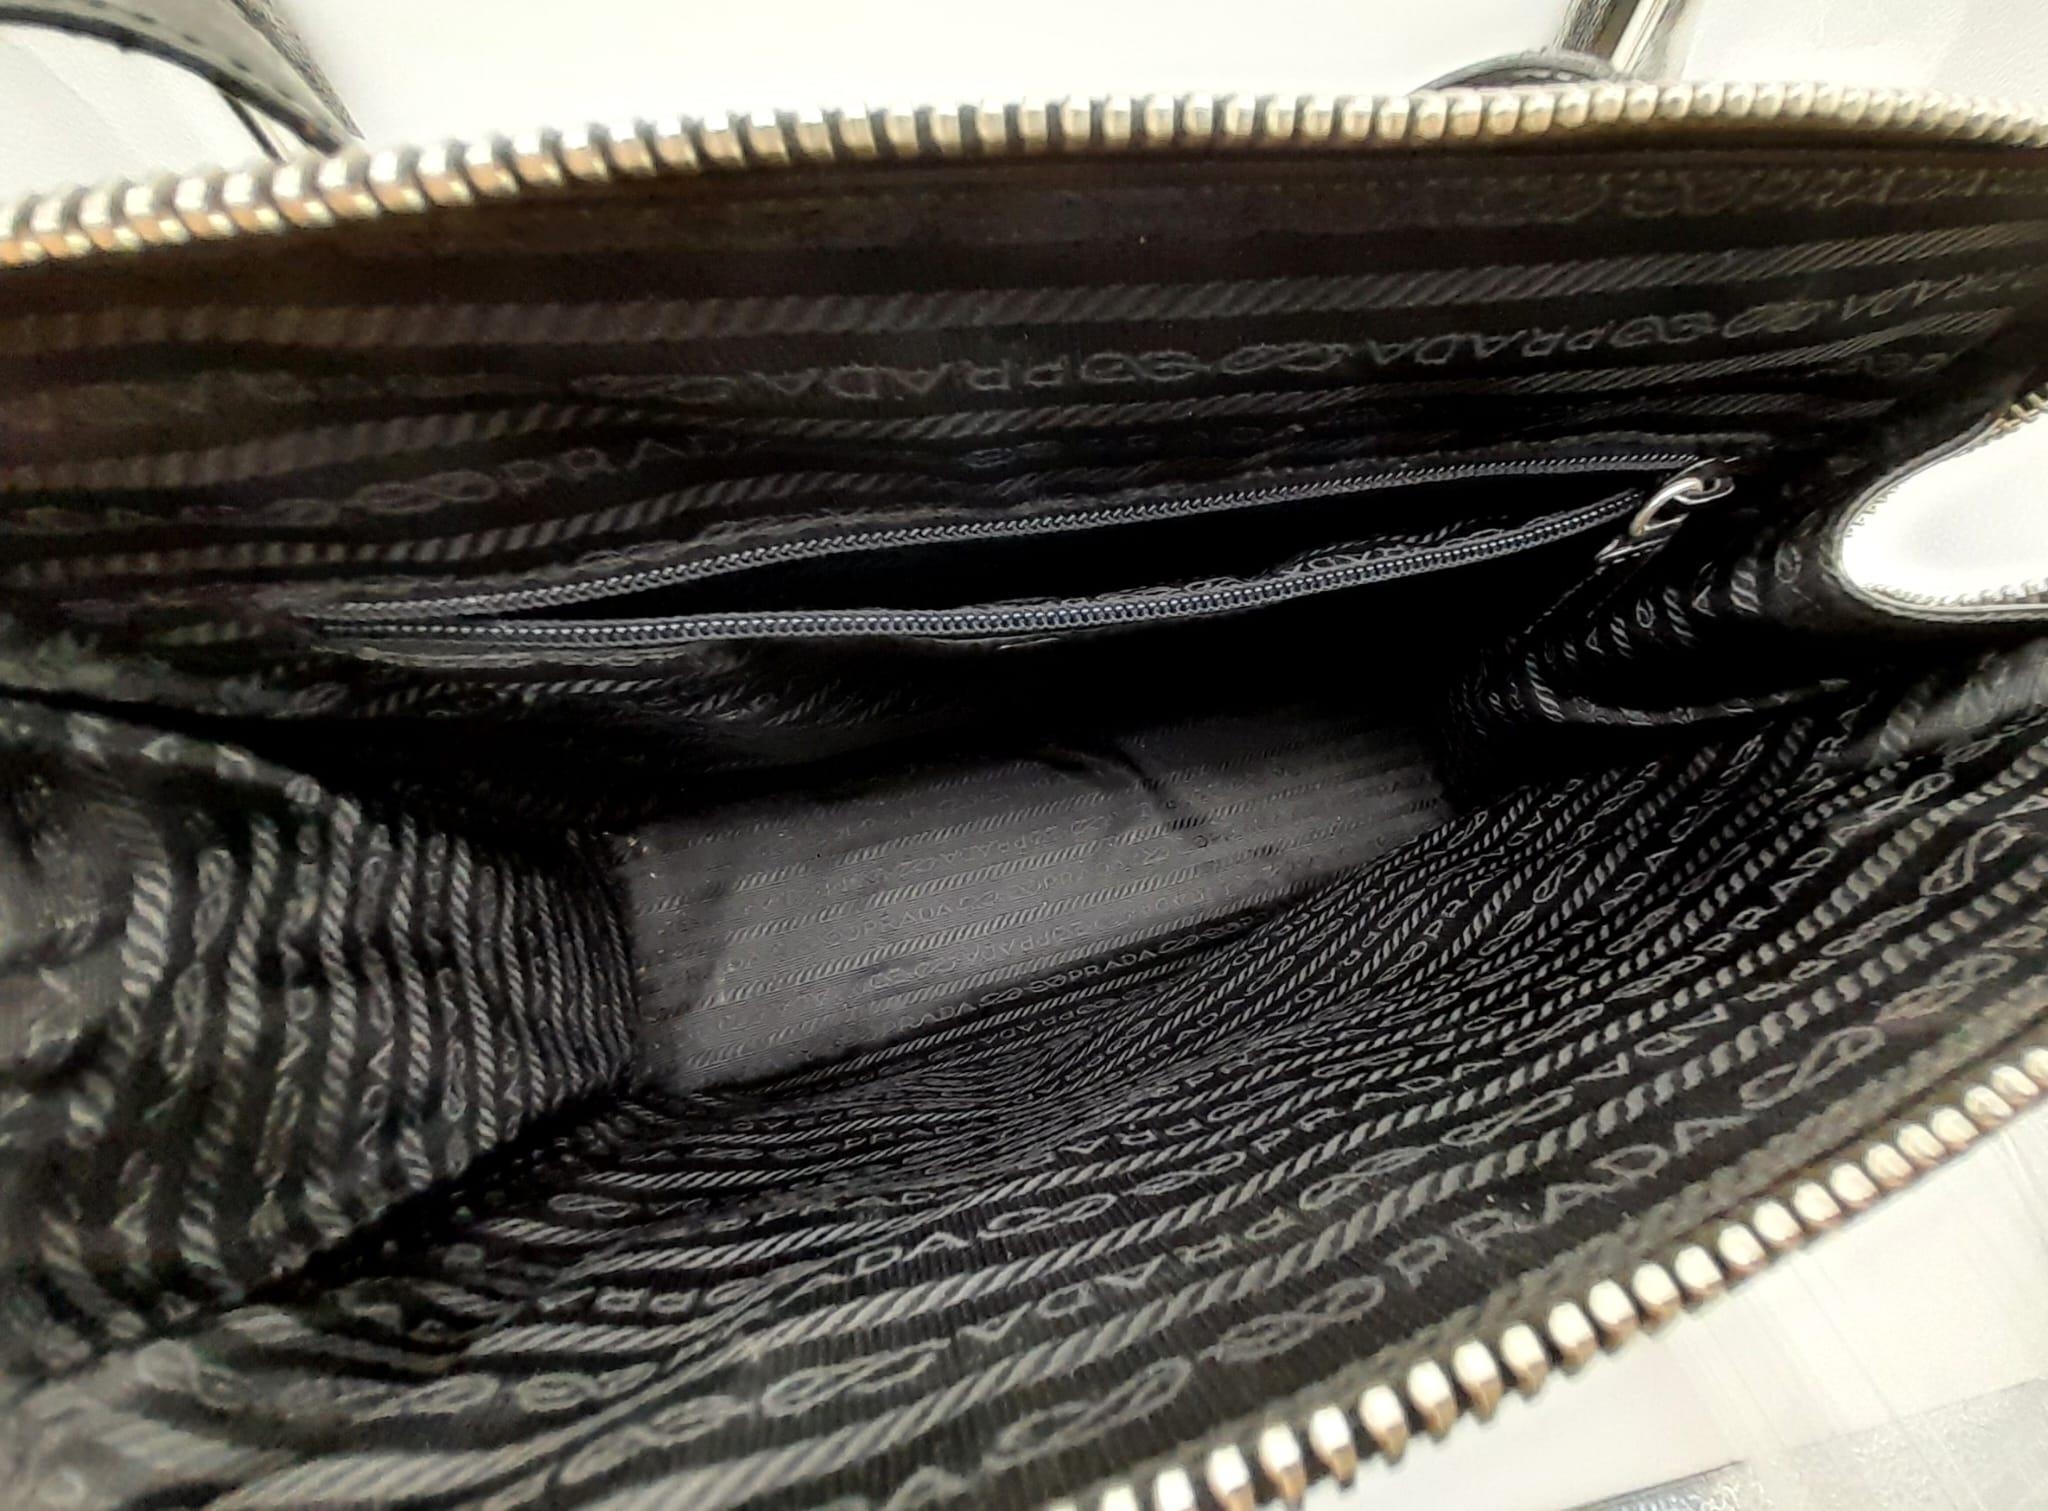 A Prada Patent Black Leather Shoulder Bag. Prada branding on exterior. Cloth monogram interior with - Image 3 of 5